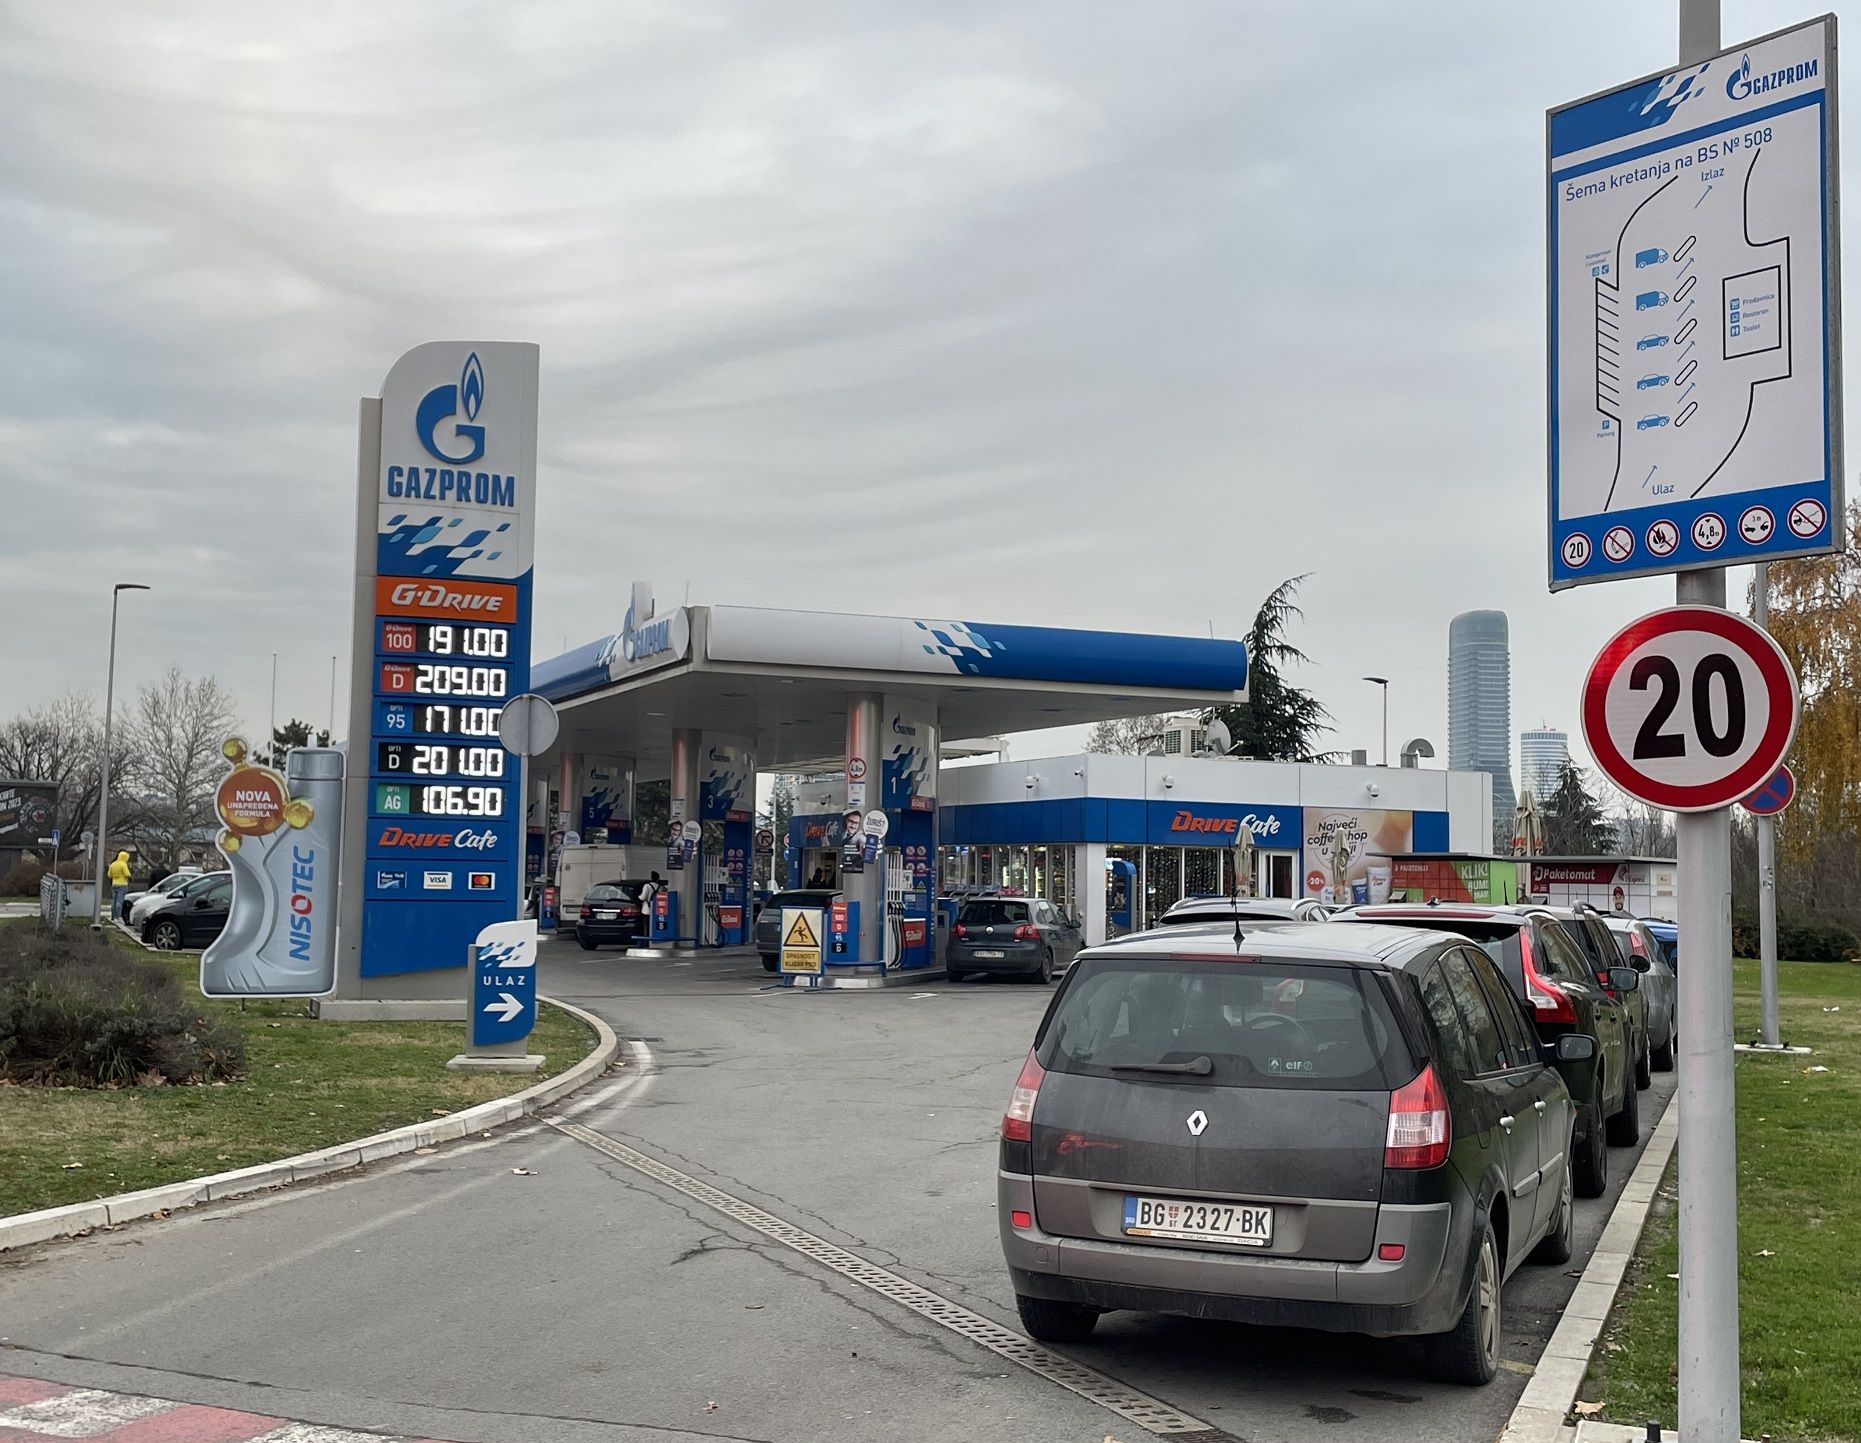 セルビアはロシアとの関係が深く、ロシア系の「ガスプロム」「Gドライブ」といったガソリンスタンドを見かける